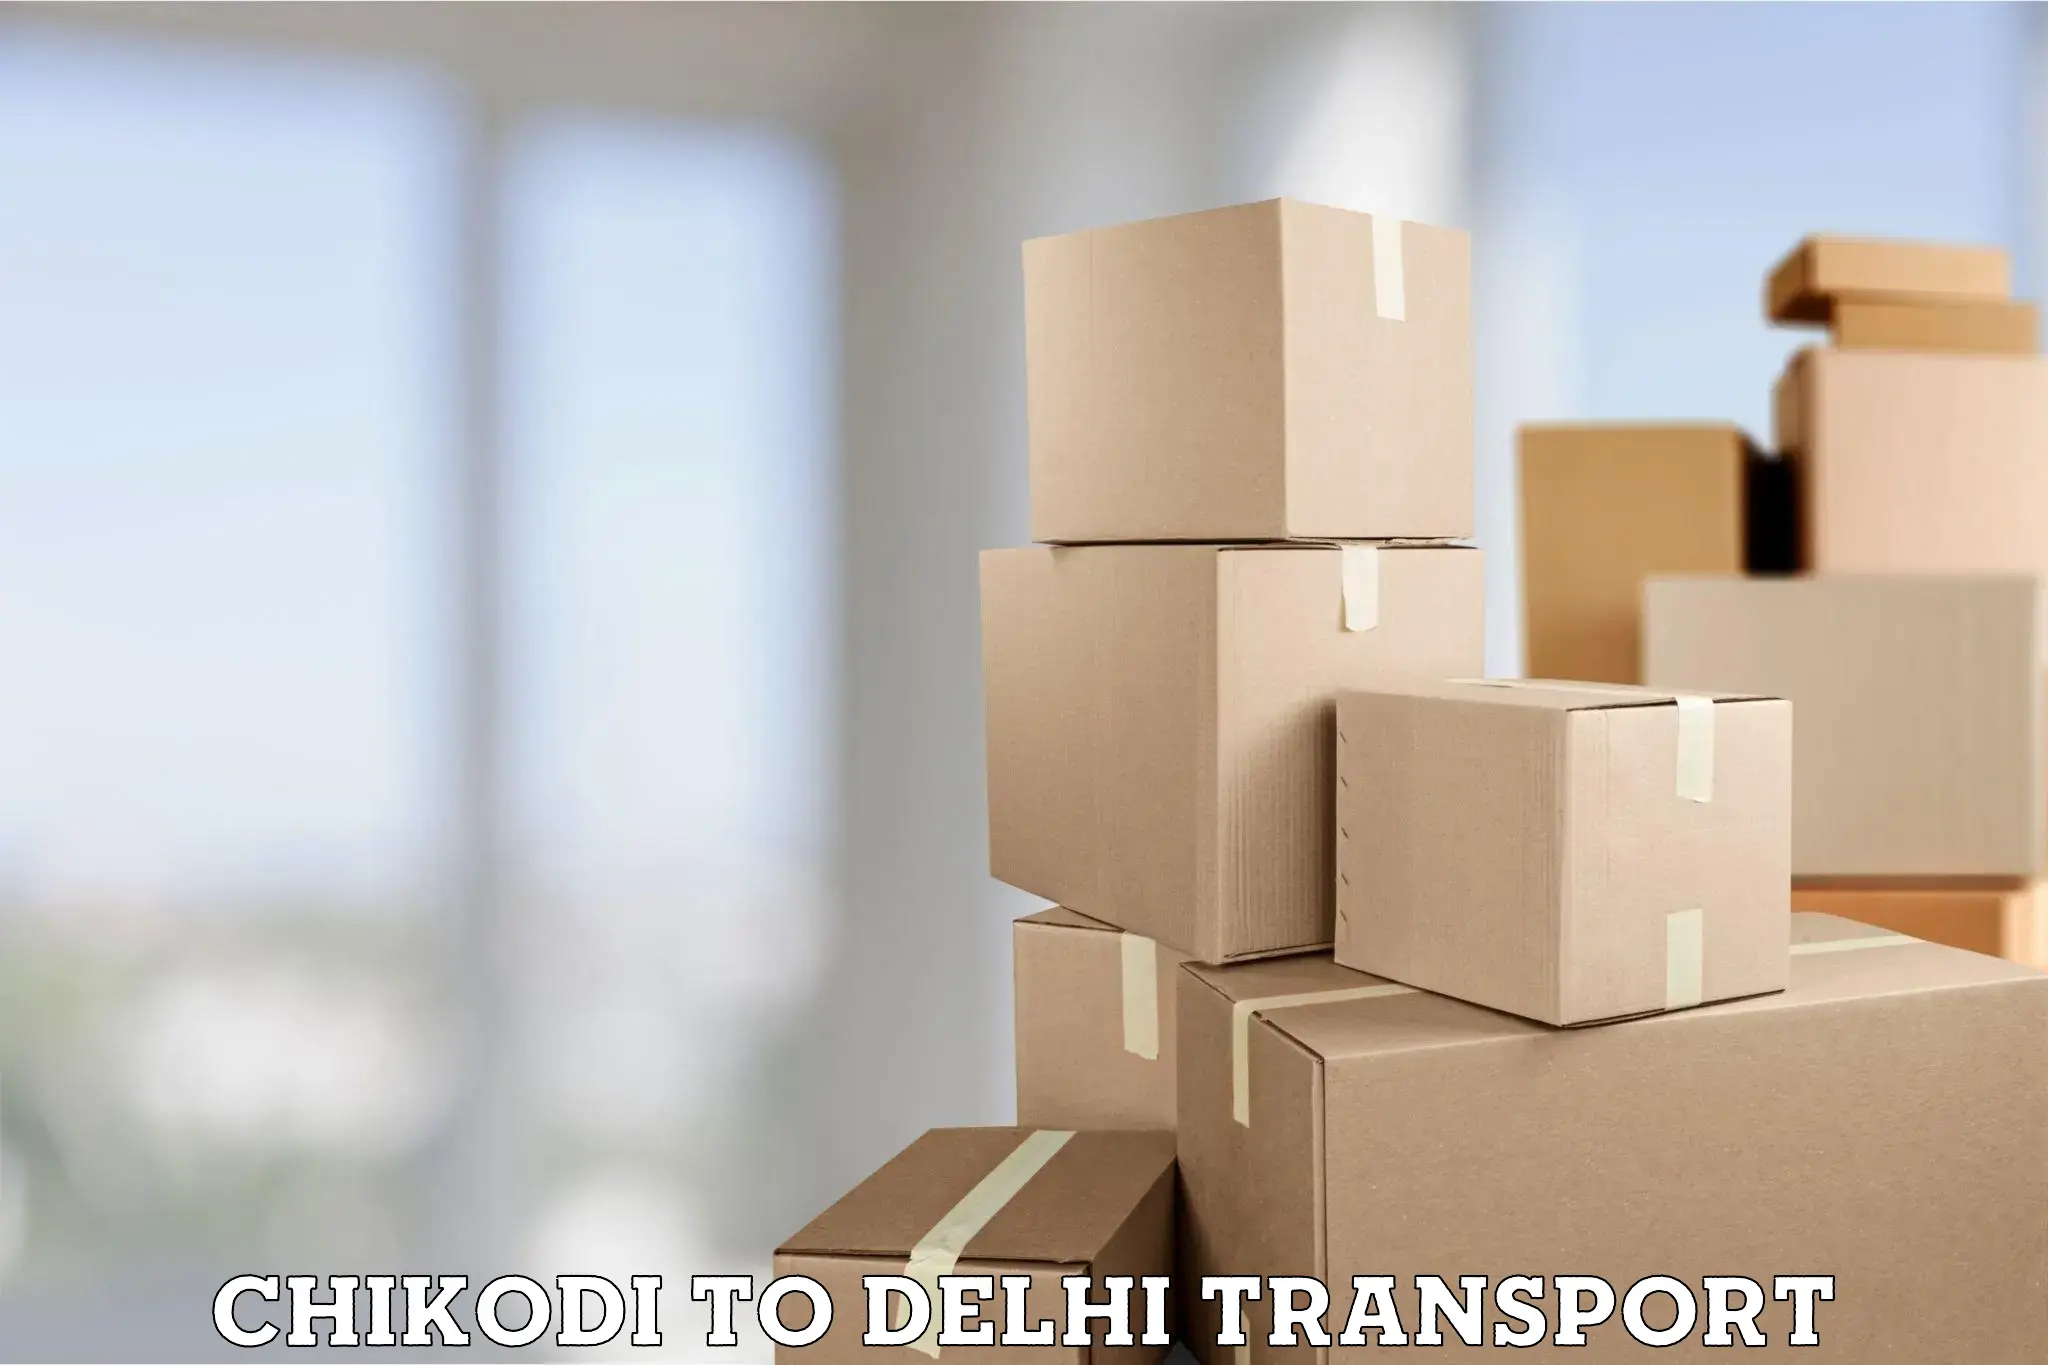 Pick up transport service Chikodi to Jhilmil